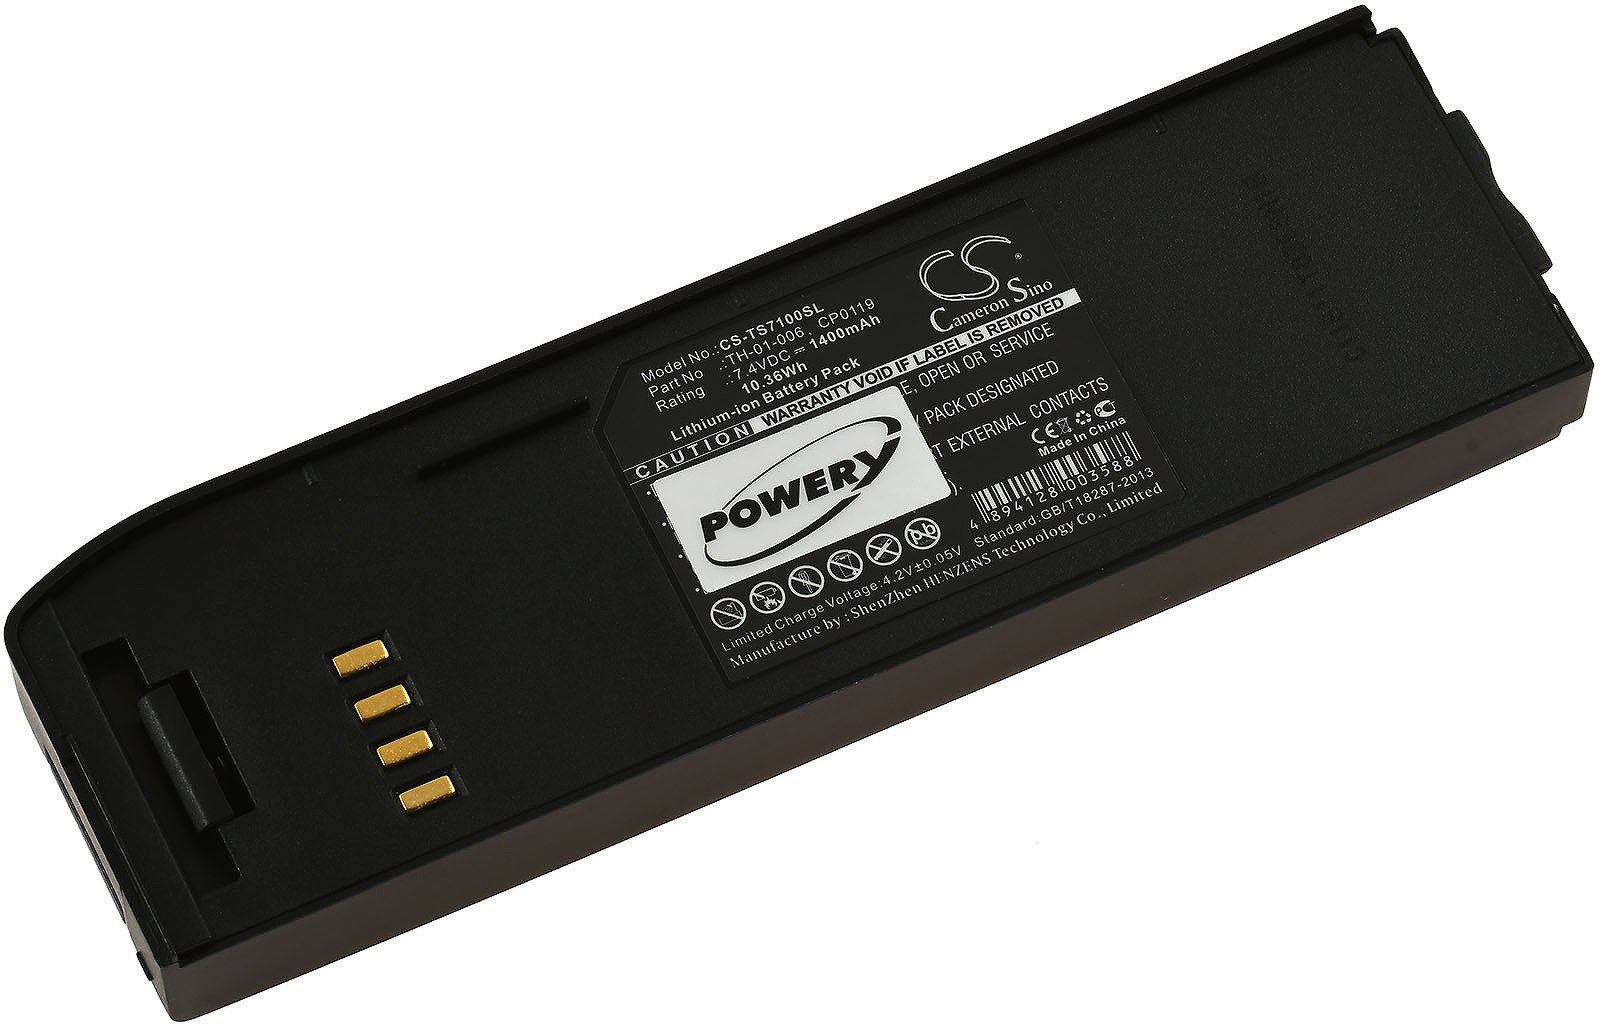 Powery Akku für Thuraya Typ CP0119 Handy-Akku 1400 mAh (7.4 V)